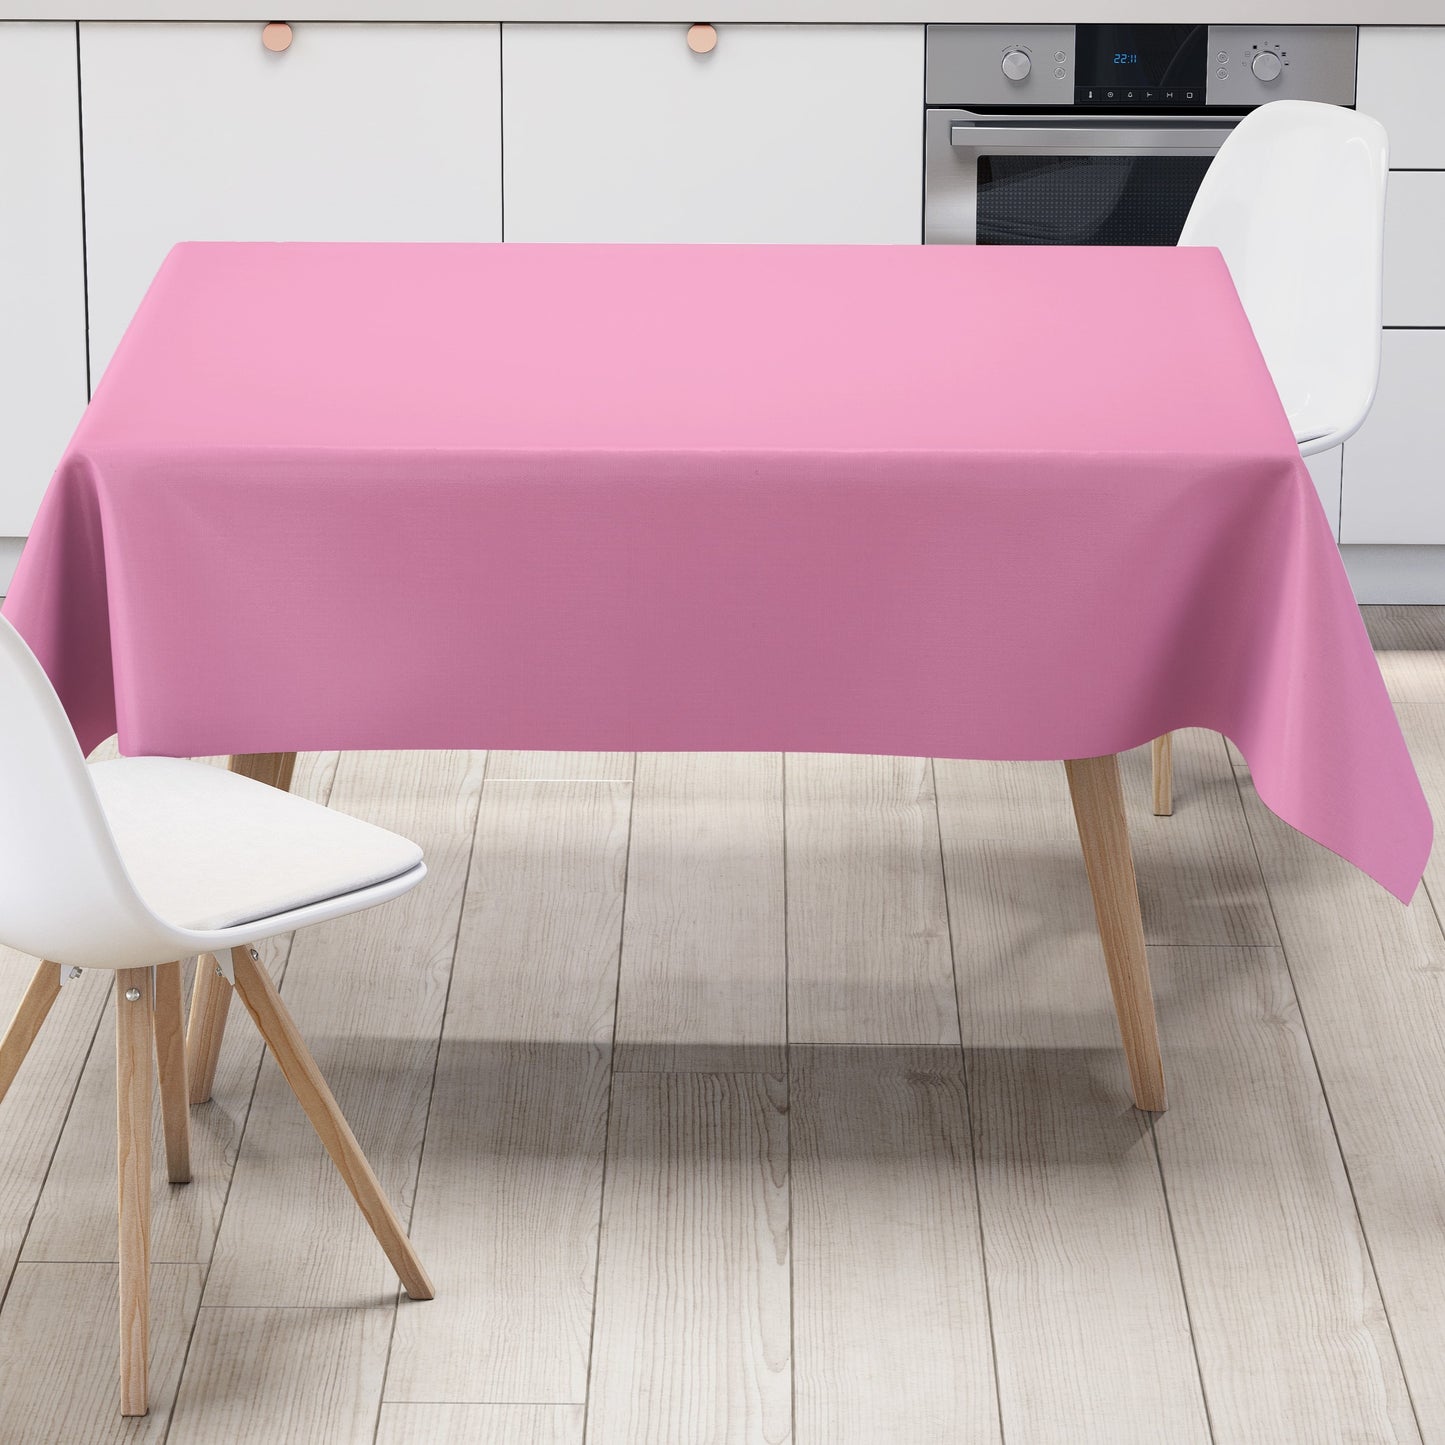 KEVKUS Wachstuch Tischdecke unifarben 210 rosa einfarbig wählbar in eckig, rund und oval -